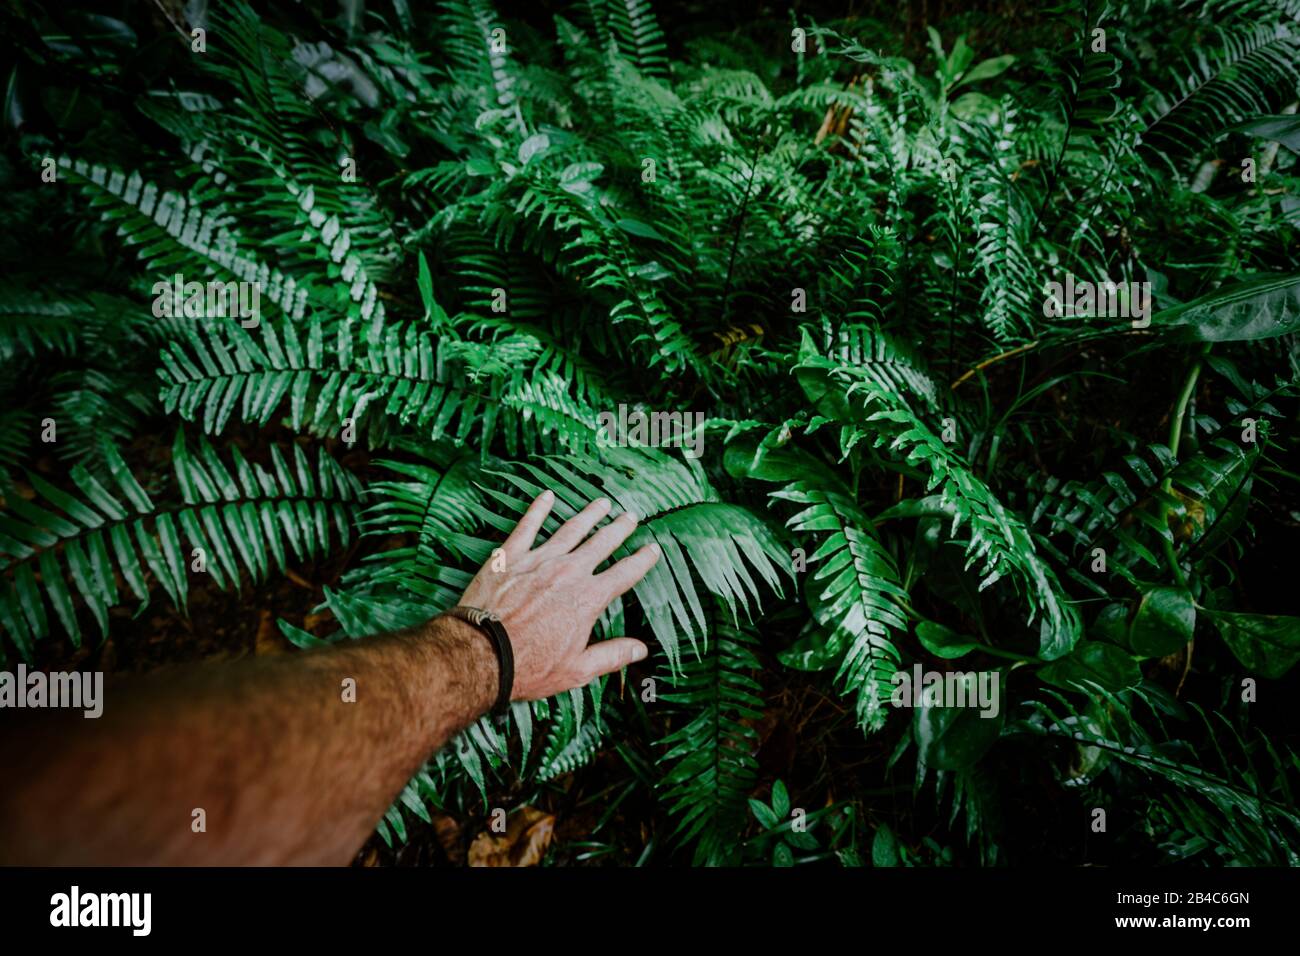 La mano del hombre toca las hojas de helechos verdes. Concepto de aventura, descubrimiento, exploración, ecología y protección ambiental. Foto de stock